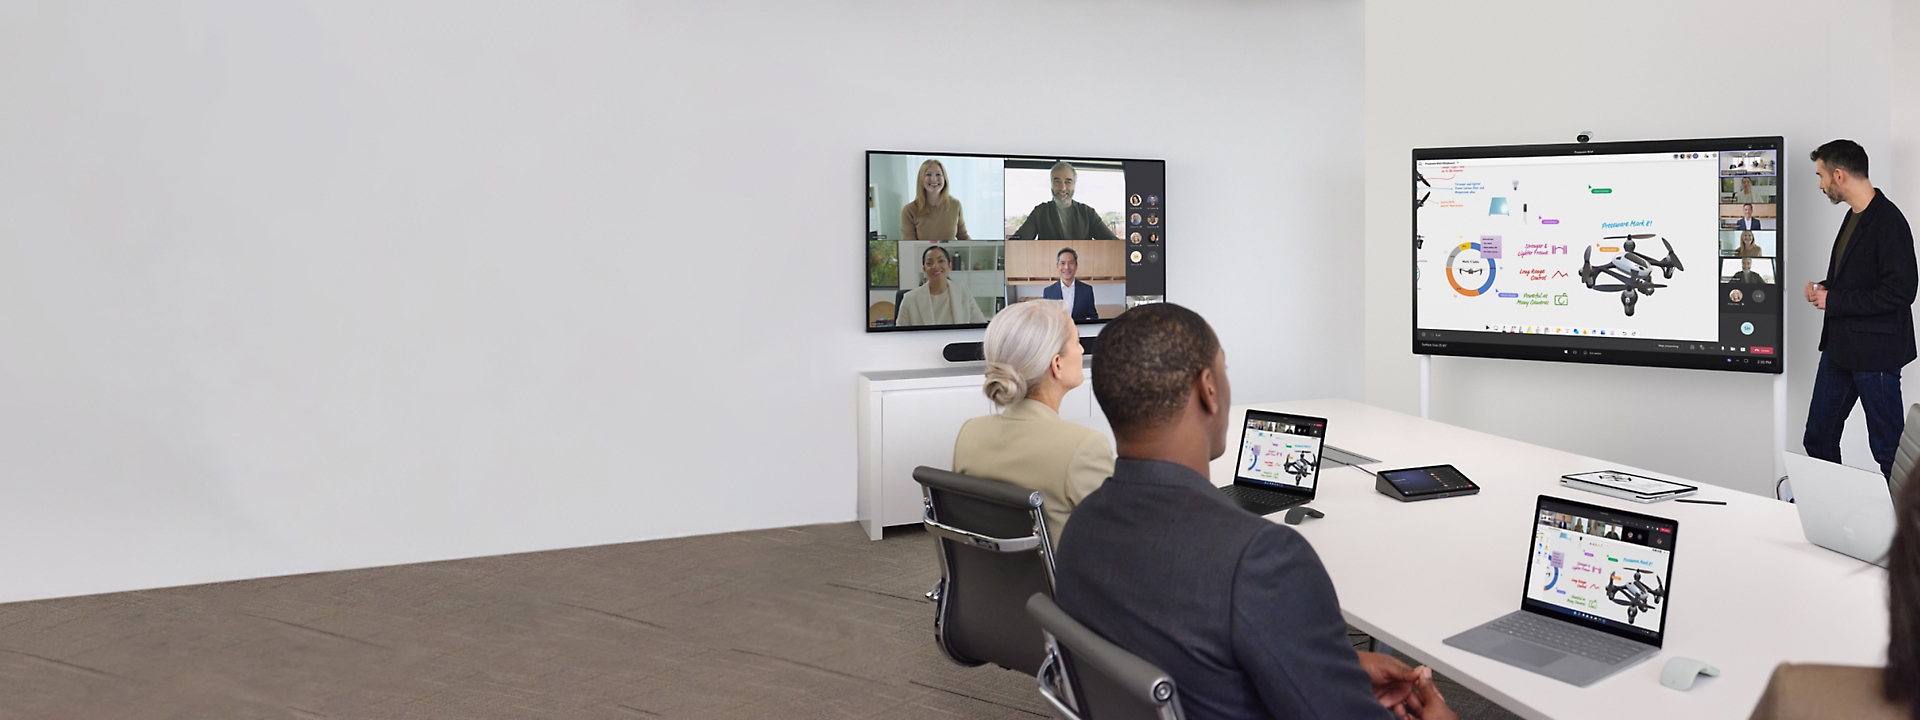 Besprechungsteilnehmer in einem Konferenzraum. Auf einem Display wird ein Teams-Videoanruf und auf einem anderen eine Präsentation angezeigt.